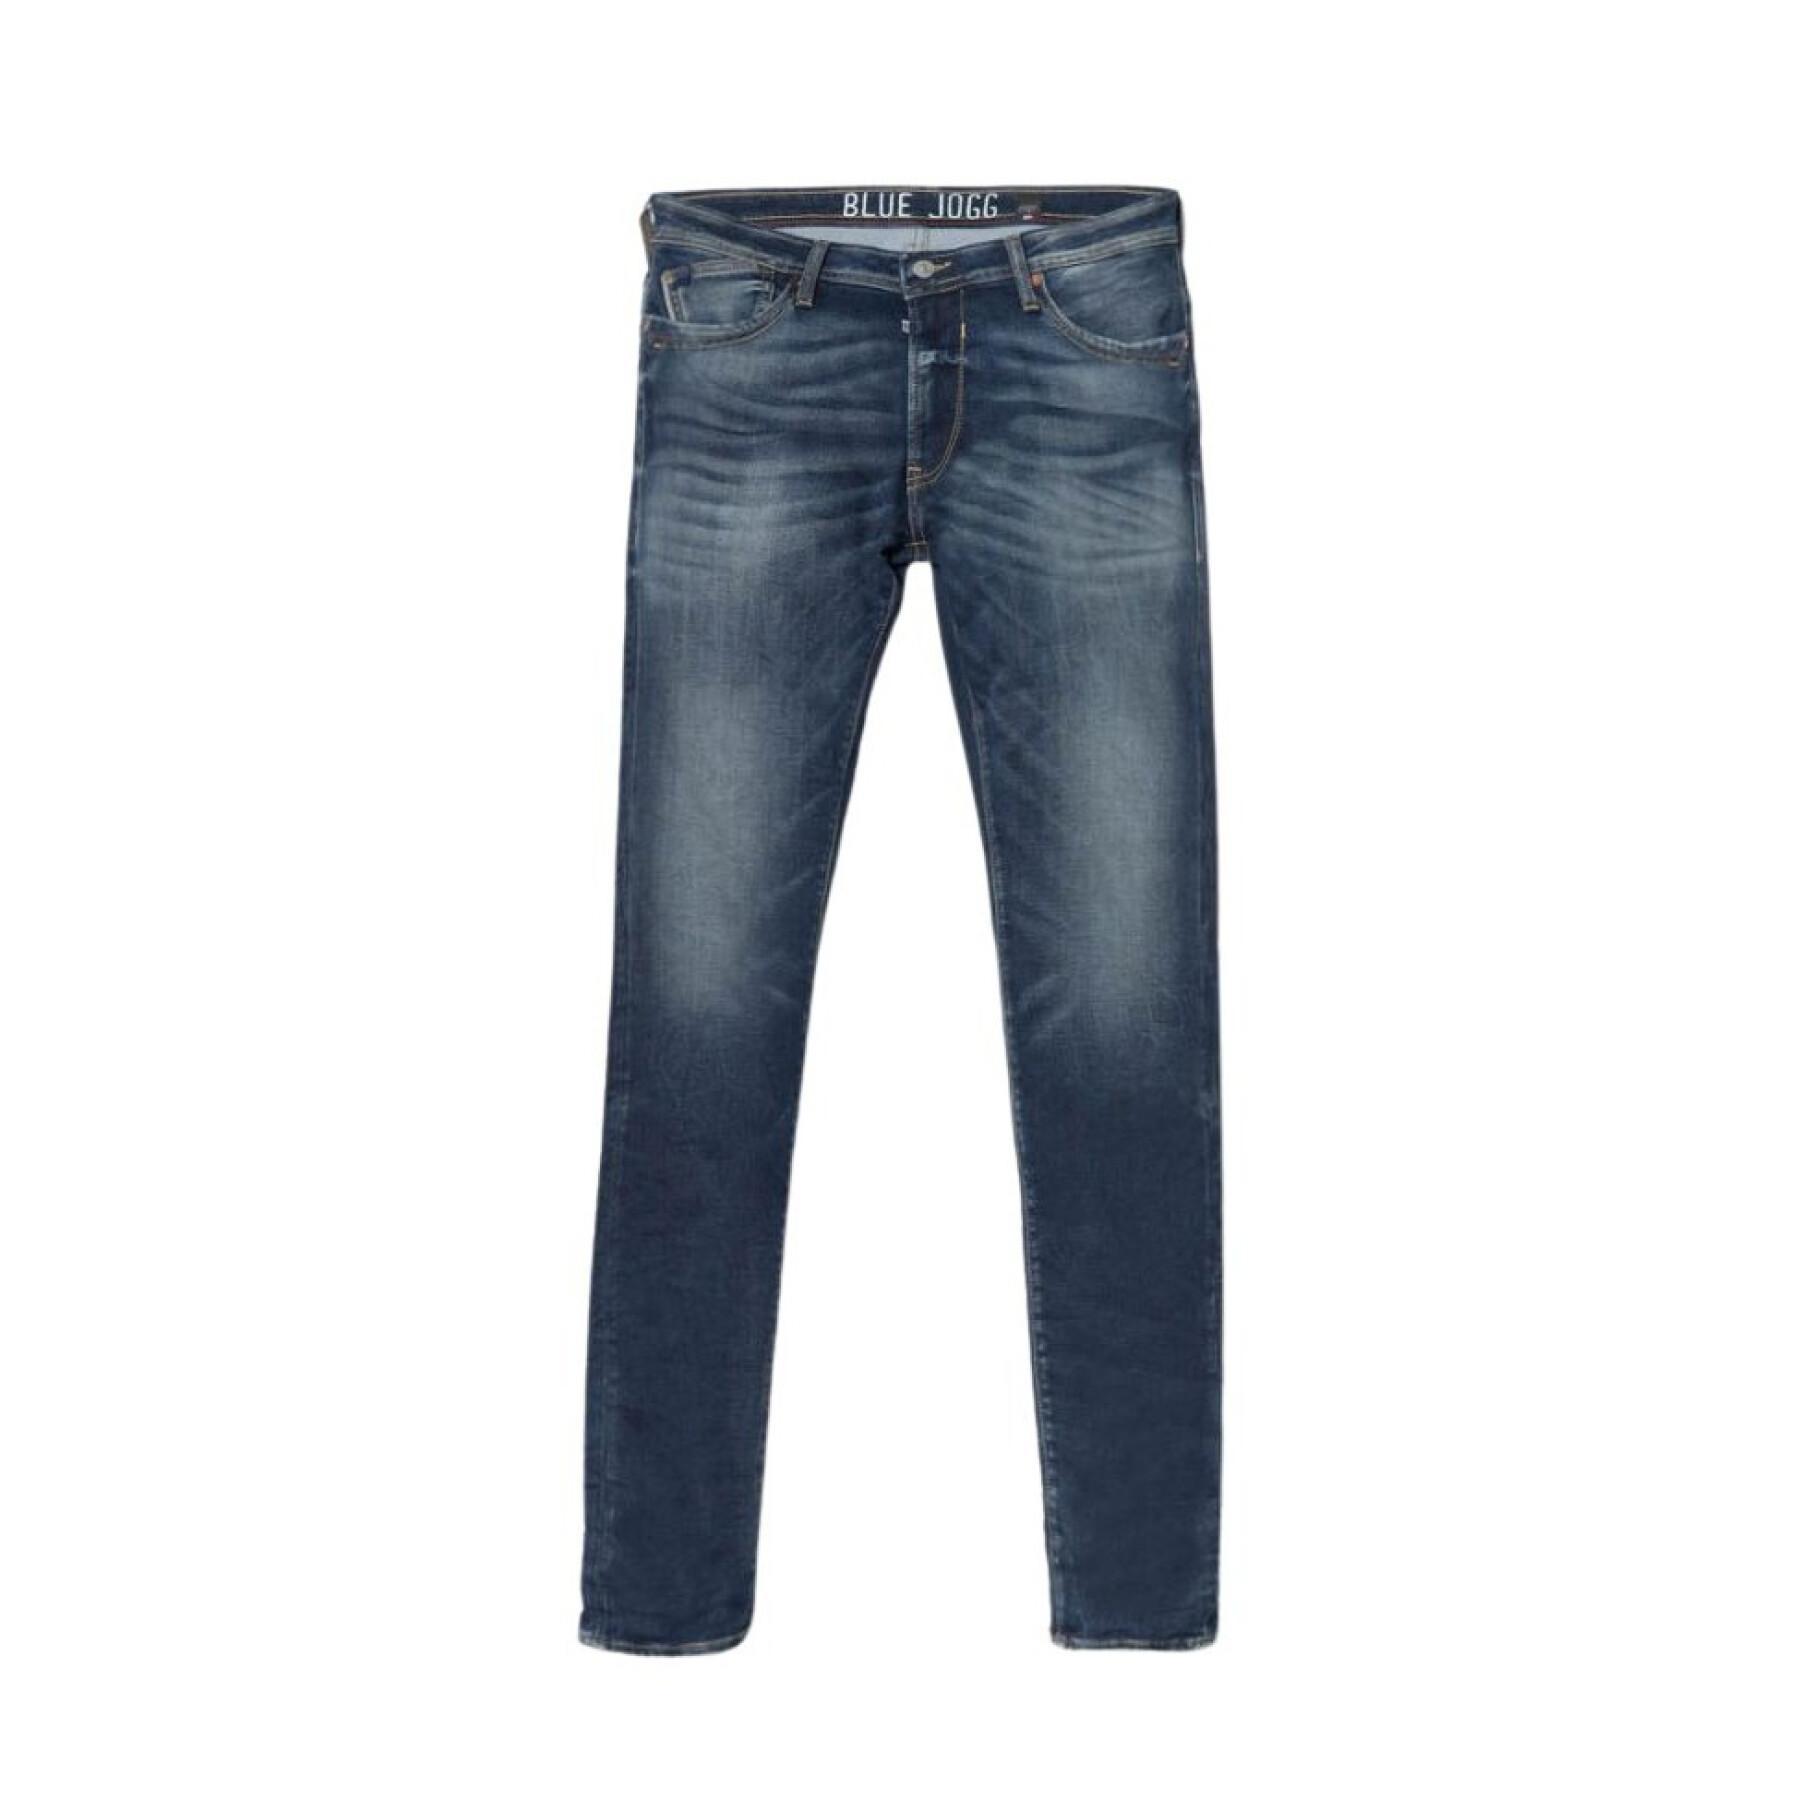 Pantalon Jeans slim Le temps des cerises Gawler 700/12